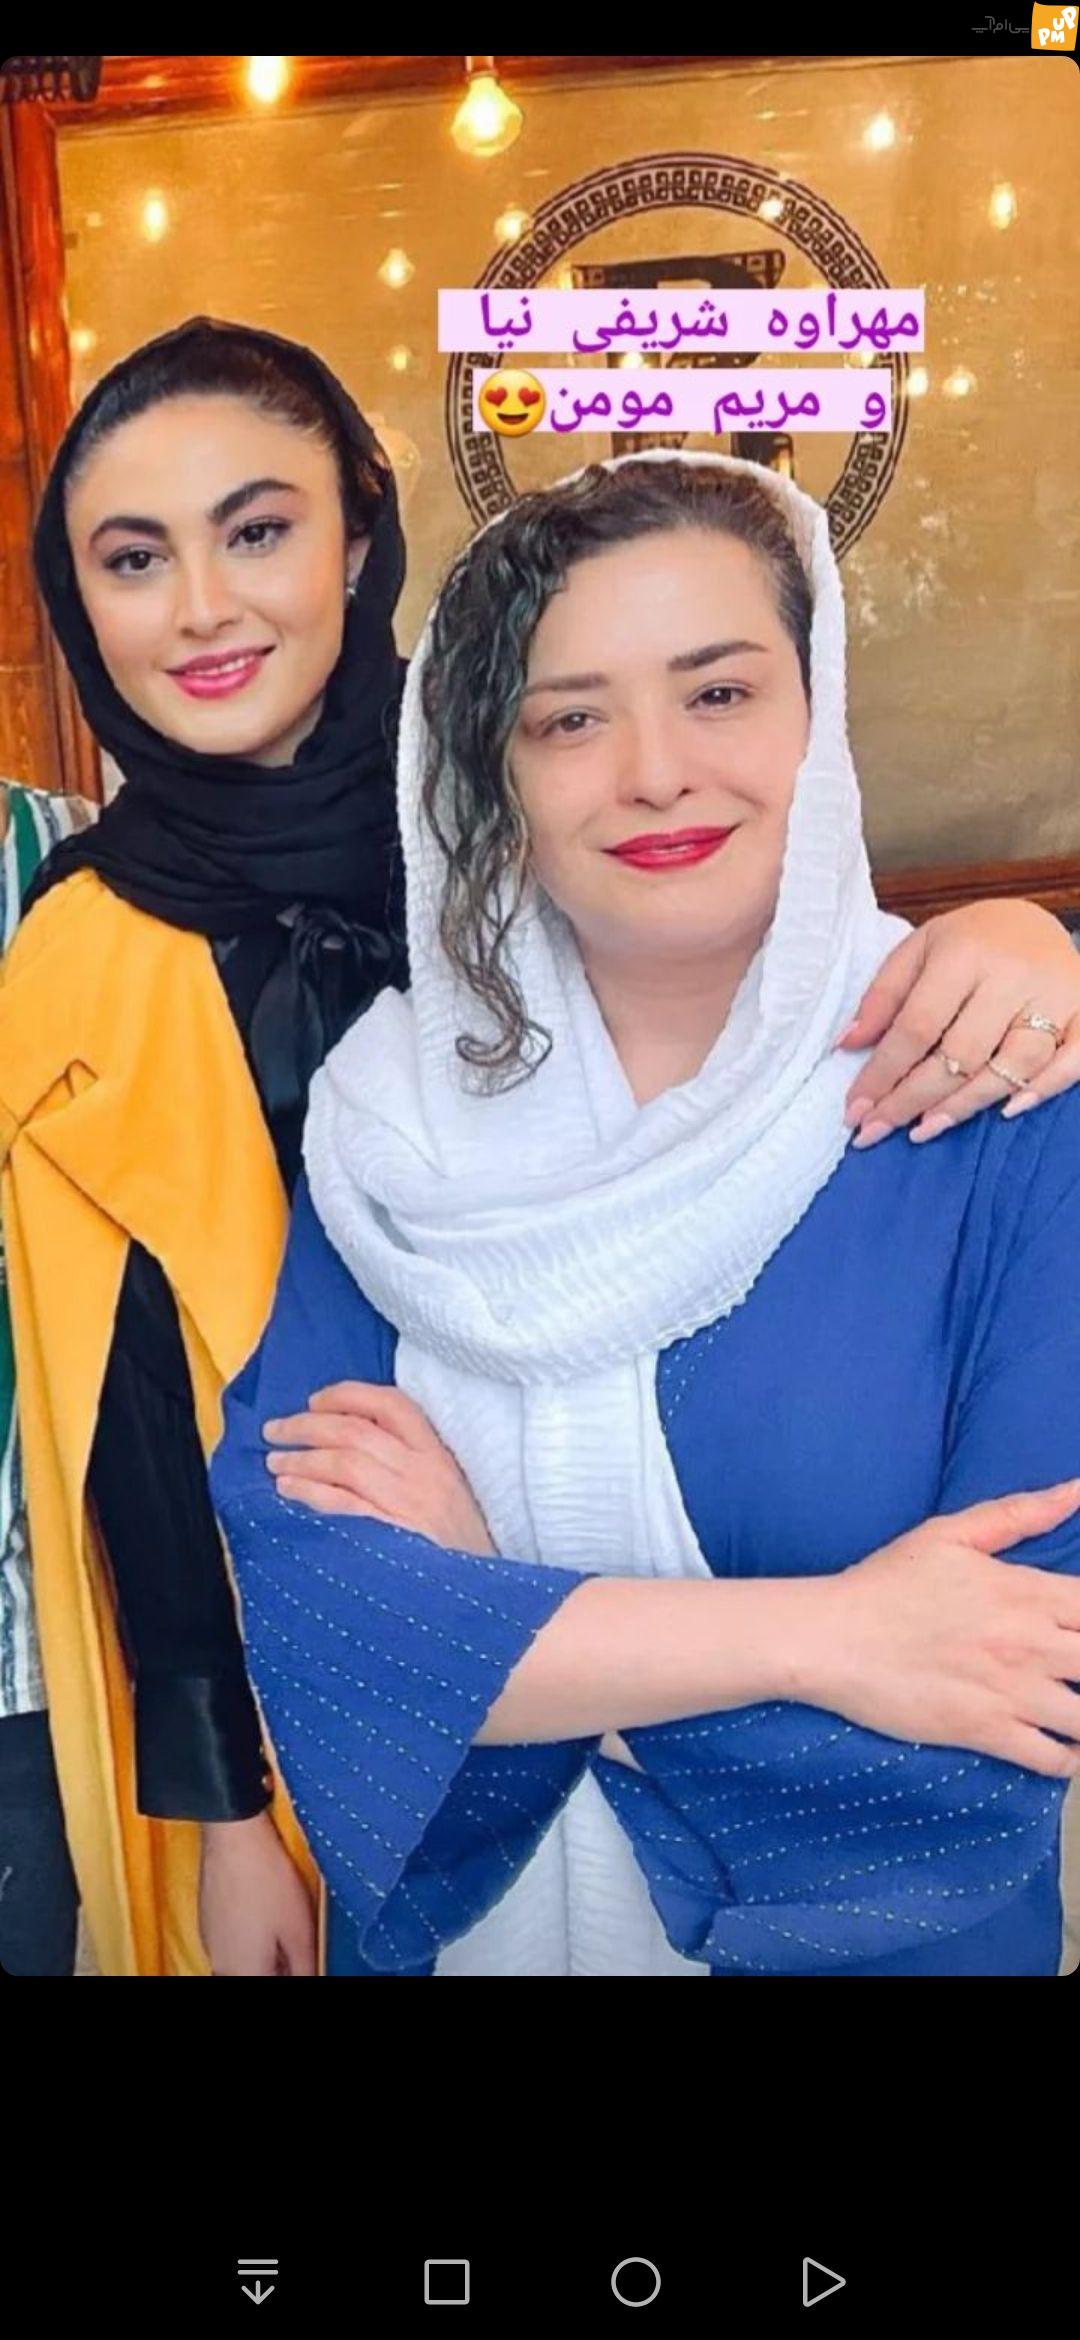 مهراوه شریفی نیا و مریم مومن با این عکس صمیمیتشان را به رخ همه کشیدند!/عکس